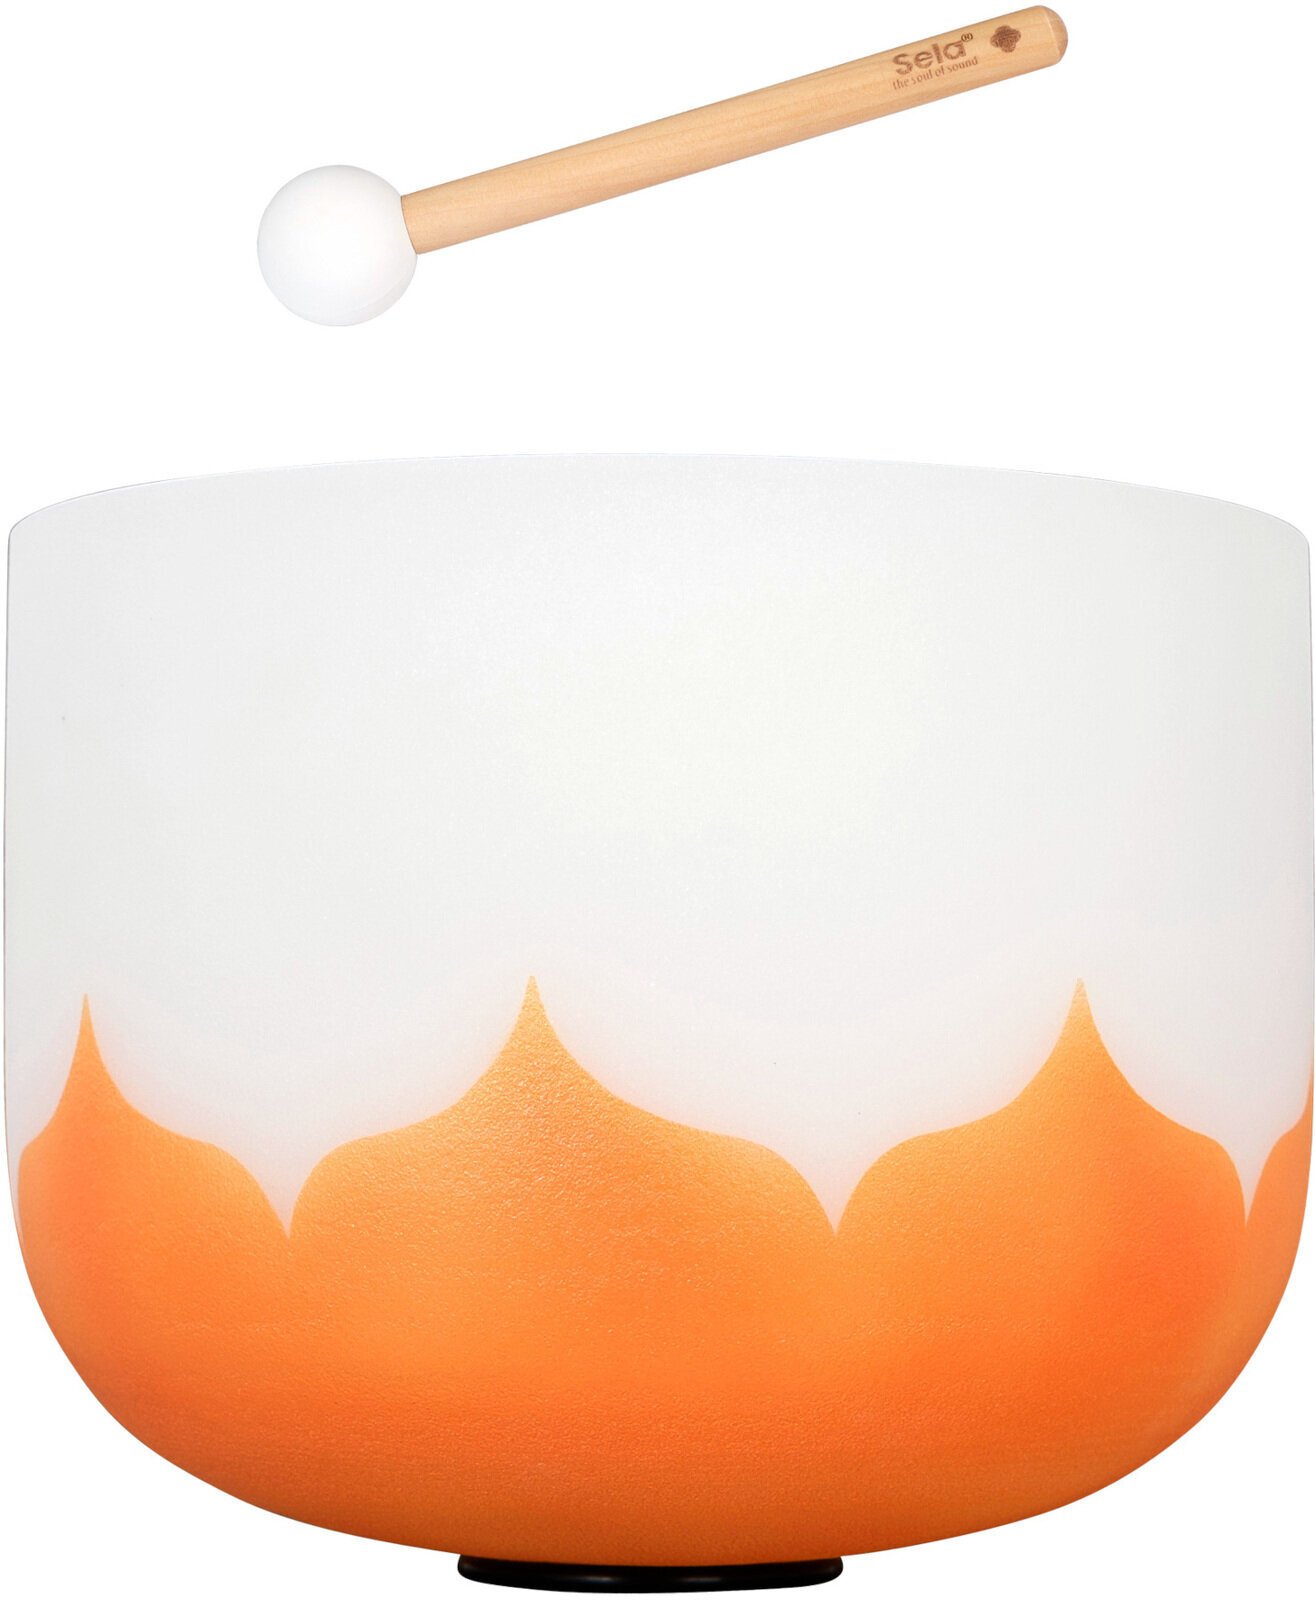 Sela 13“ Crystal Singing Bowl Set Lotus 432Hz D - Orange (Sacral Chakra) Sela